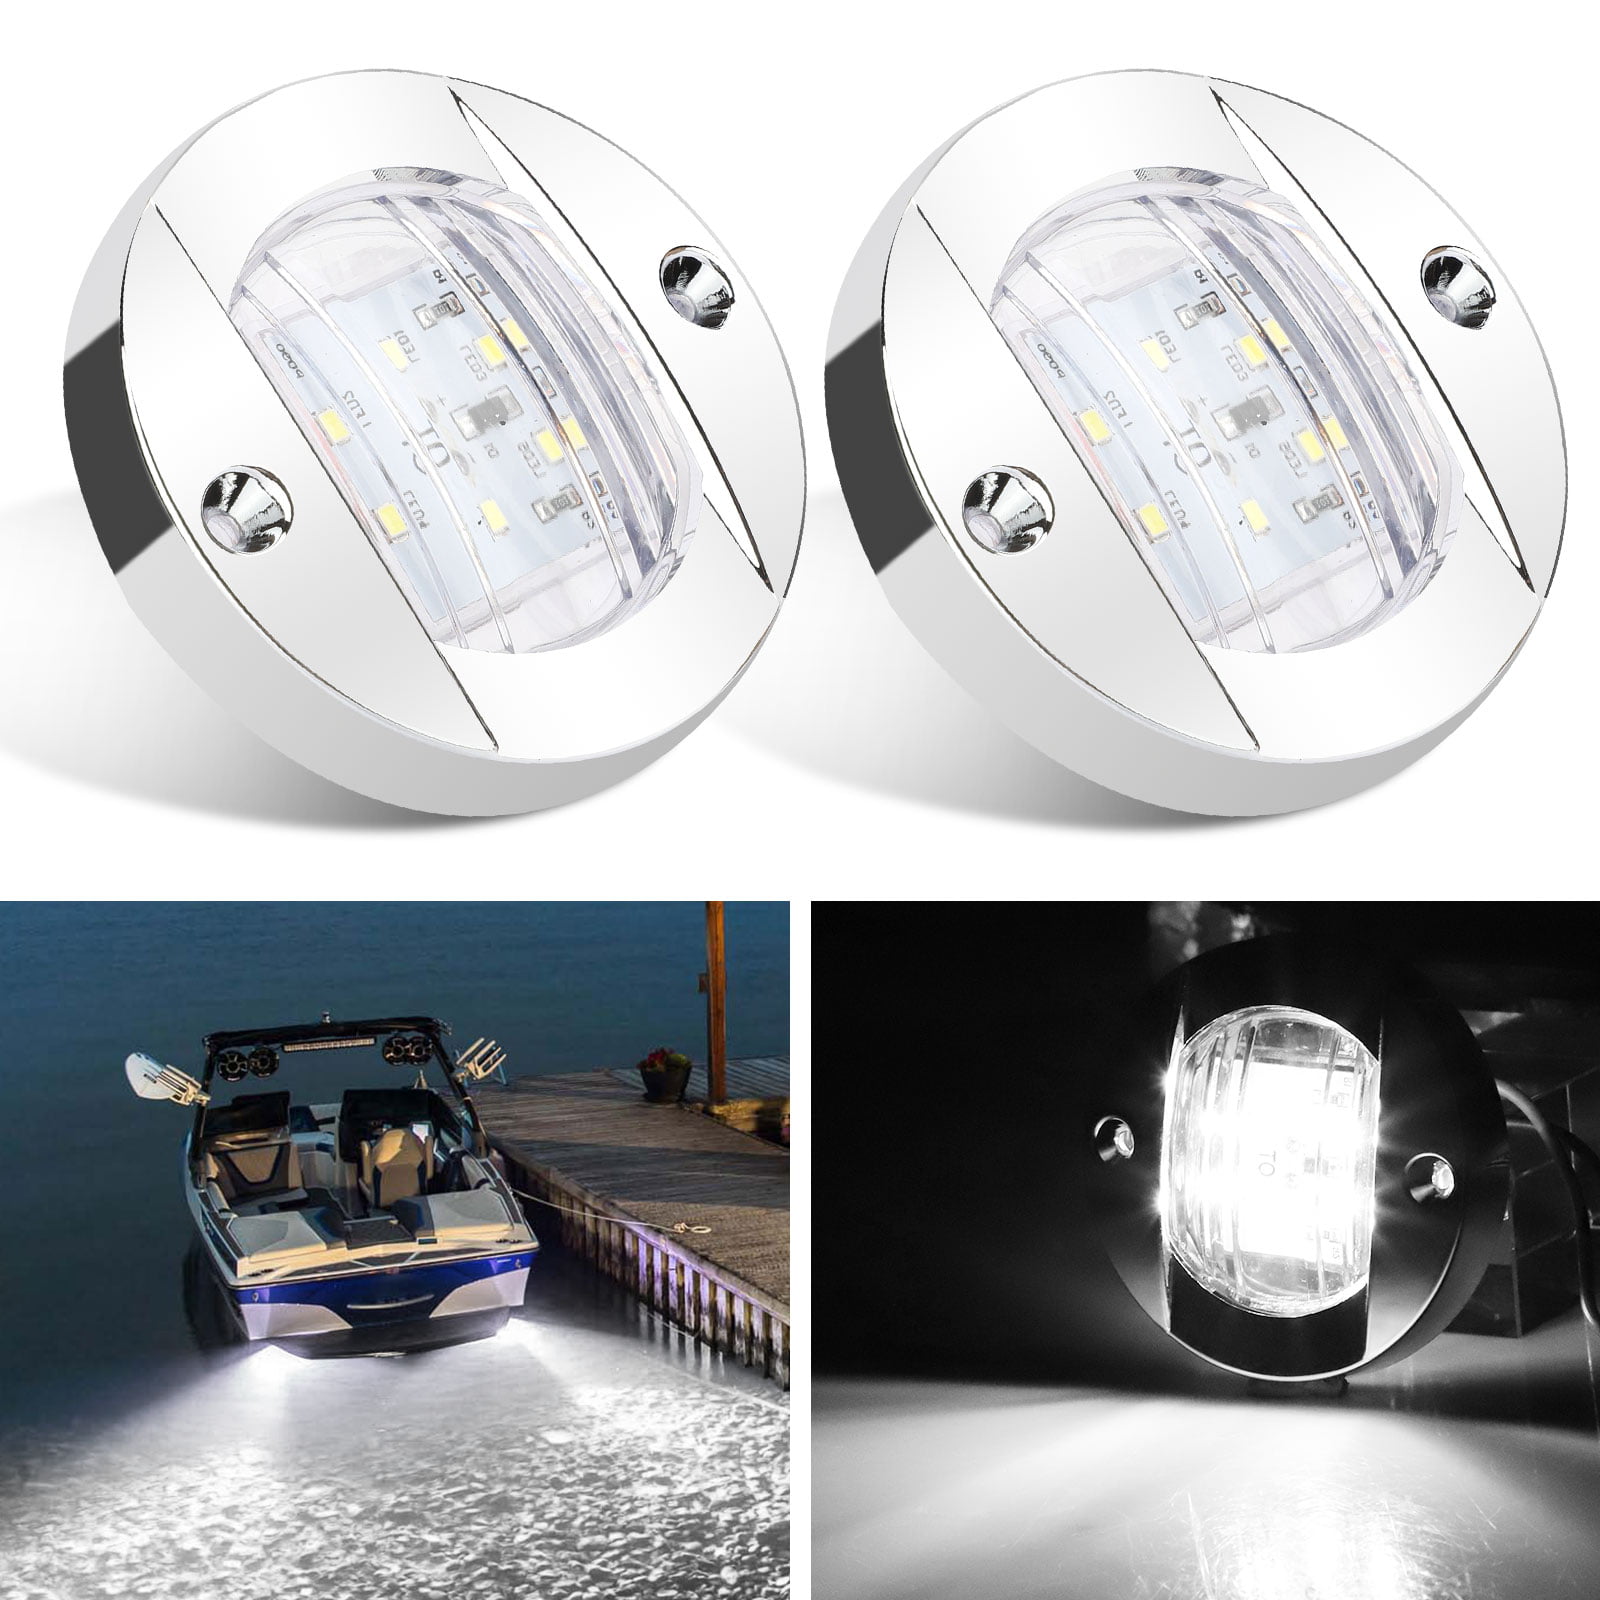 EEEkit Boat Light LED, 12V LED Boat Interior Light for